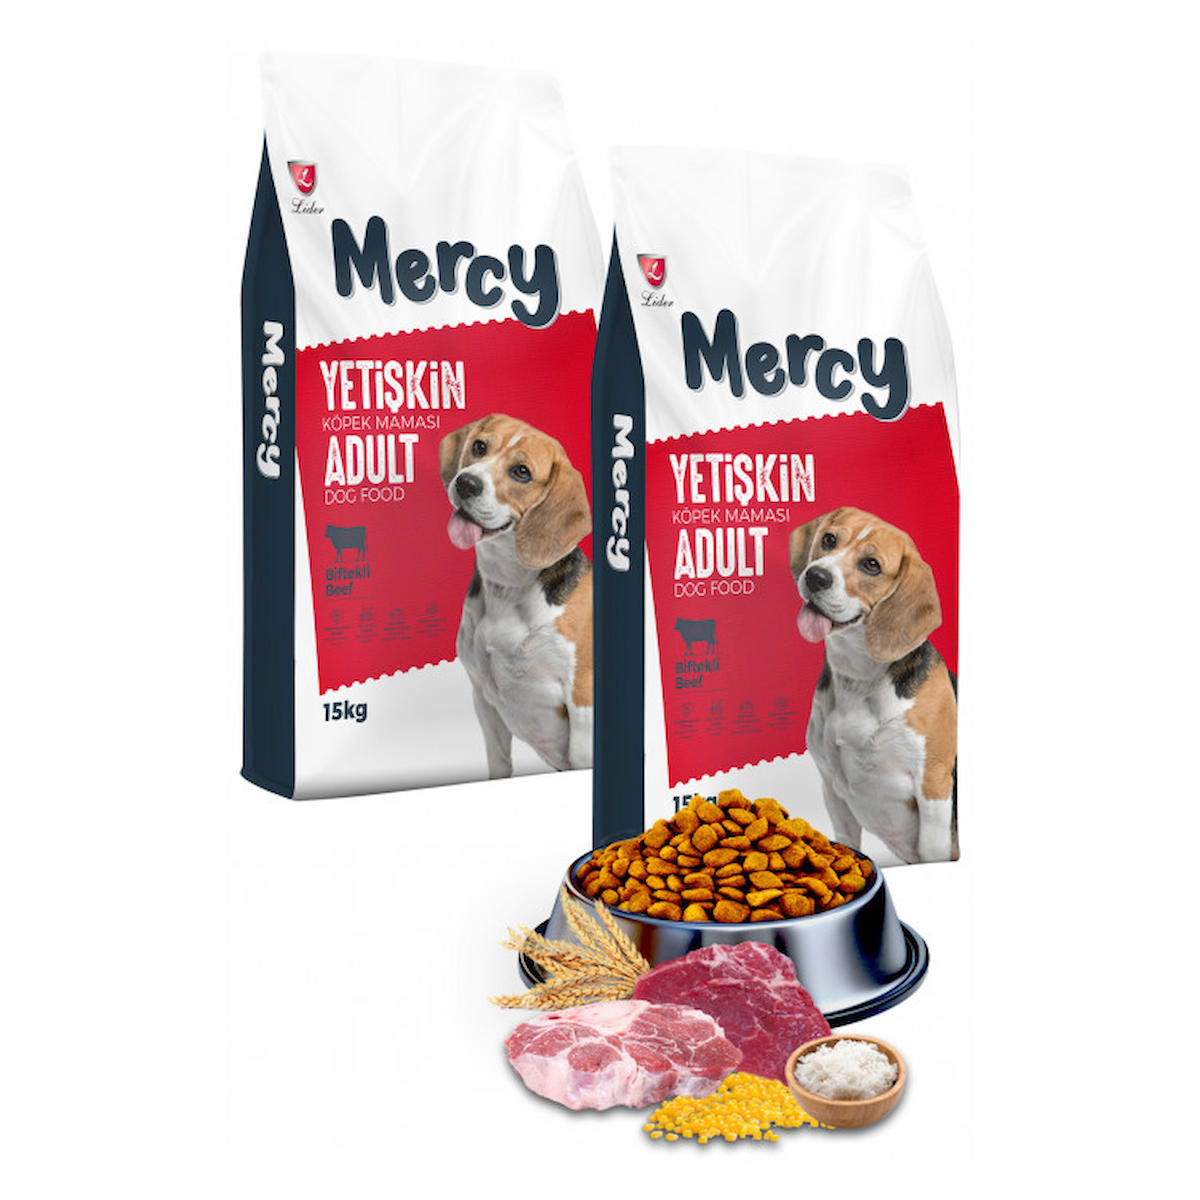 Mercy Biftekli Tüm Irklar Yetişkin Kuru Köpek Maması 2x15 kg